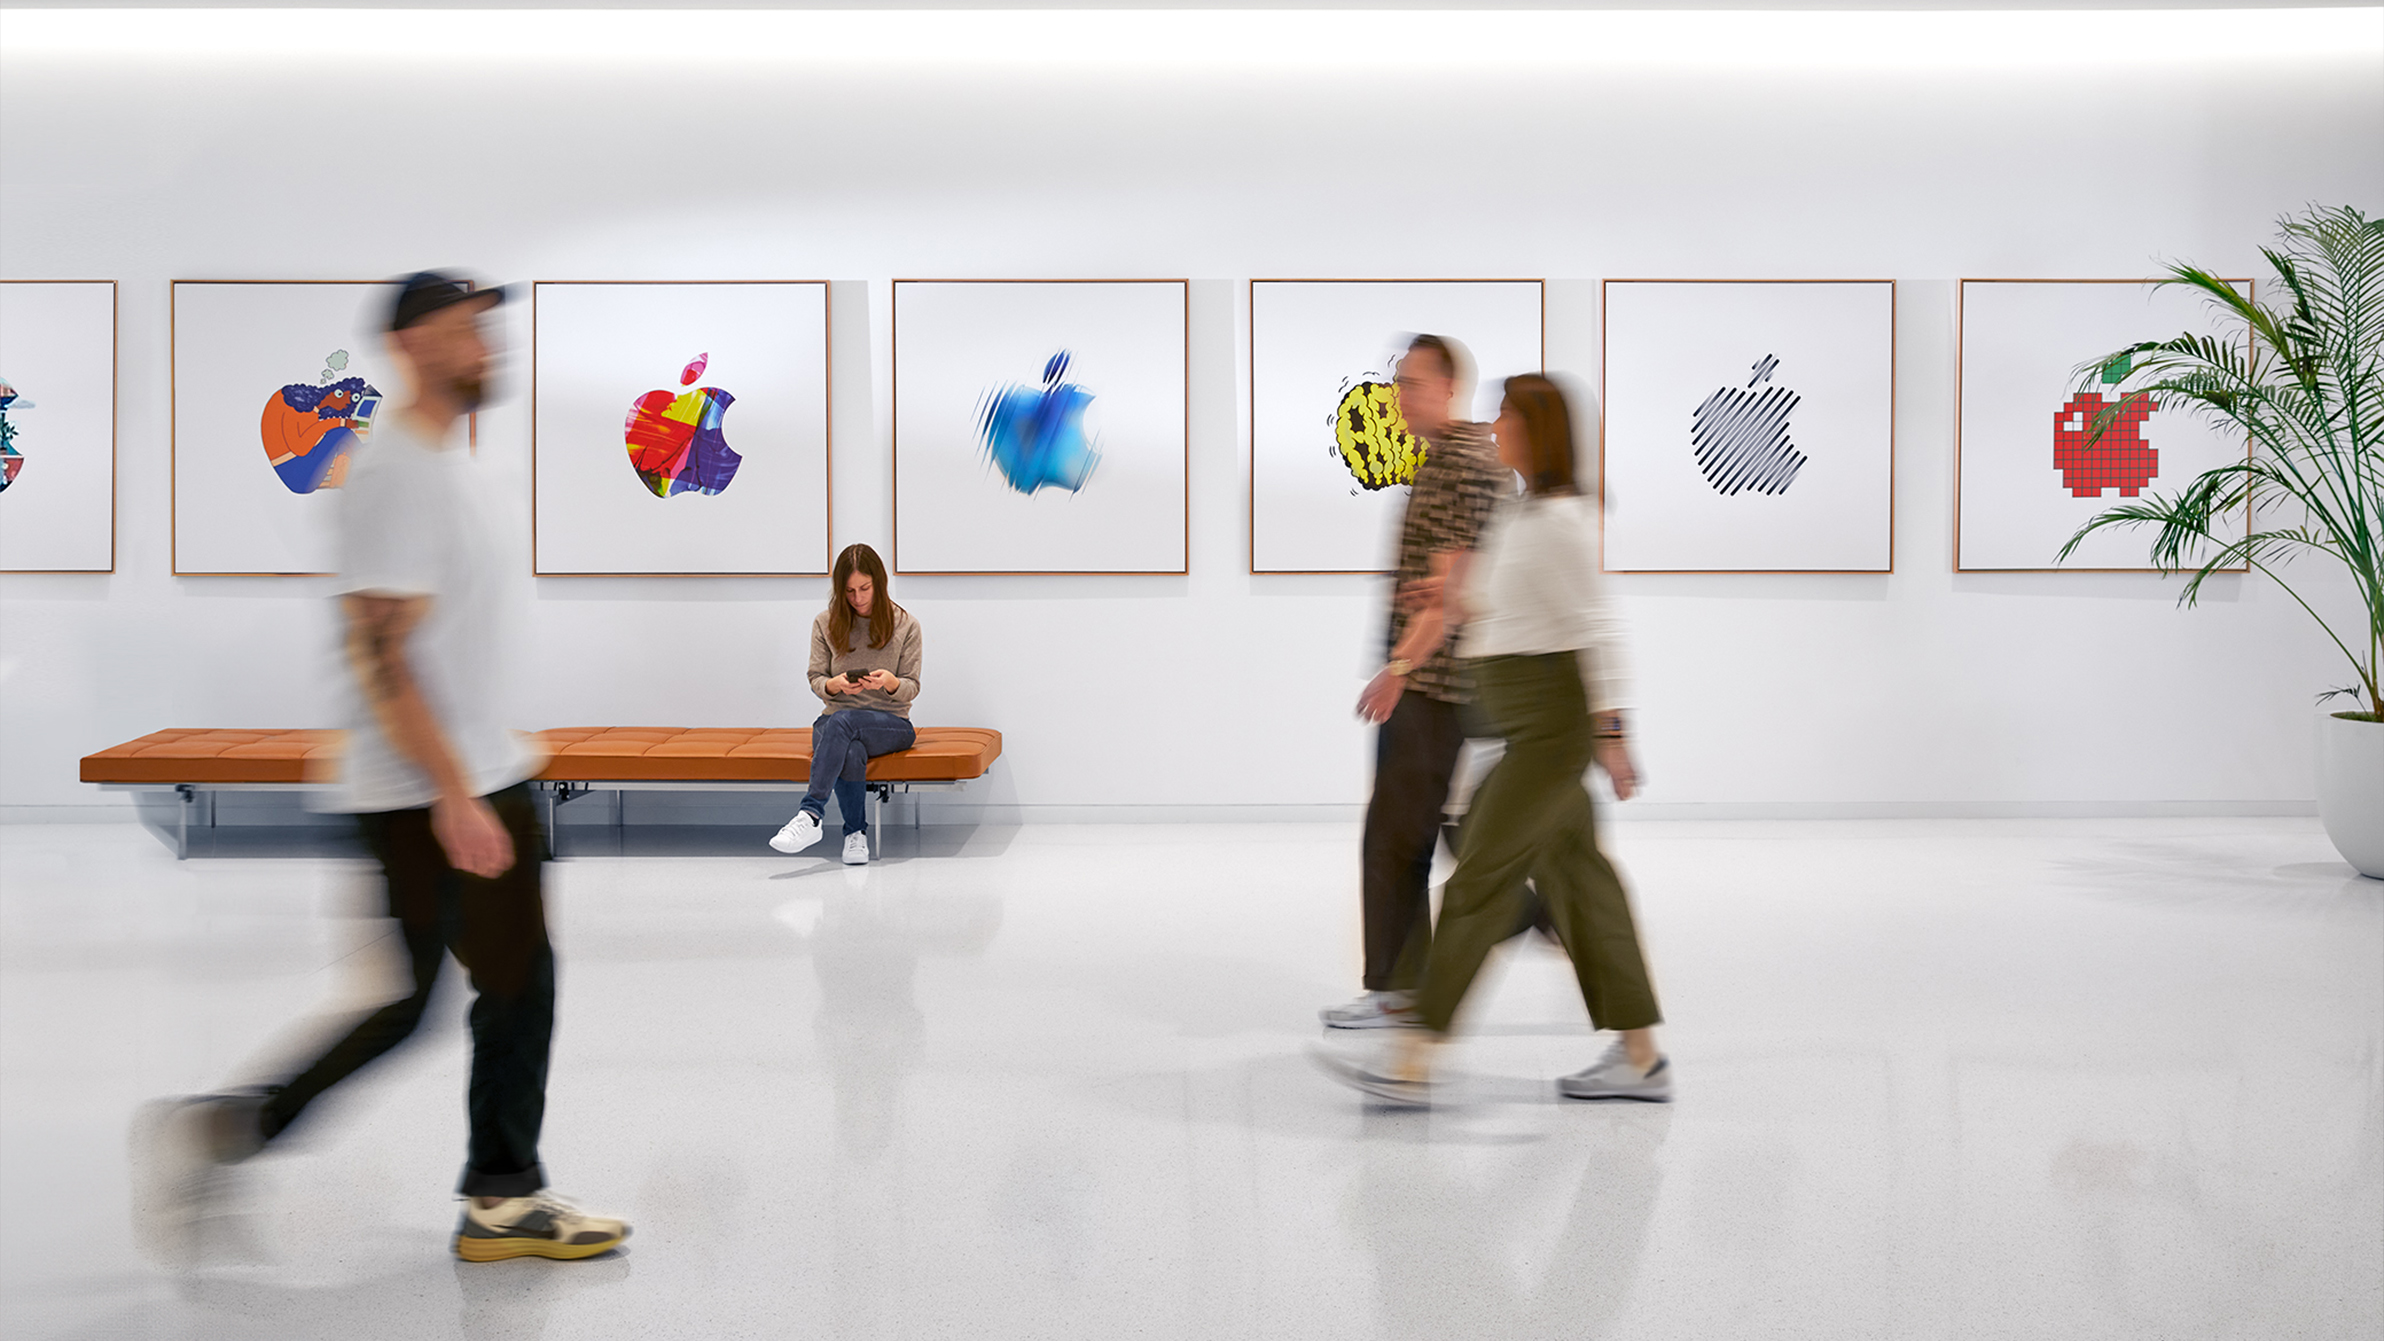 พนักงาน Apple 3 คนกำลังเดินผ่านผนังร้านที่มีโลโก้ Apple ส่วนพนักงาน Apple คนที่สี่กำลังนั่งอยู่บนม้านั่ง